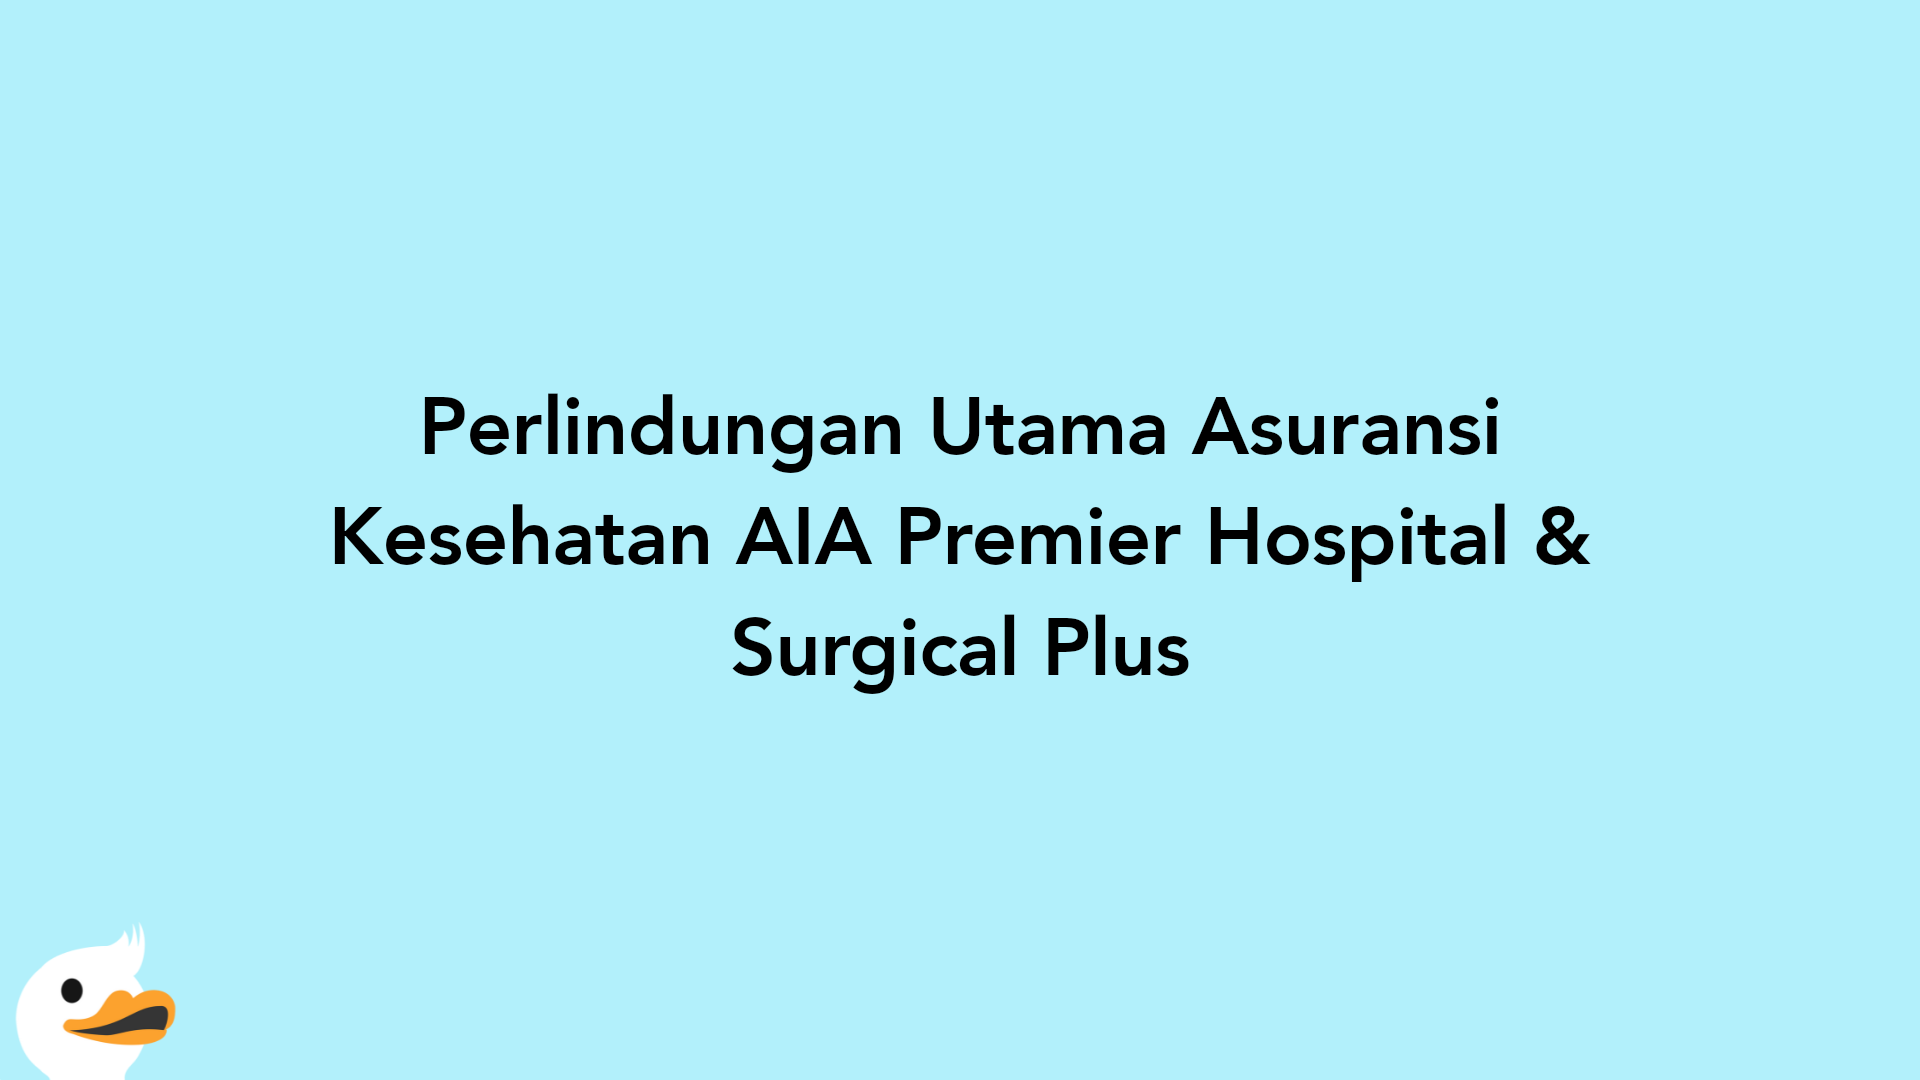 Perlindungan Utama Asuransi Kesehatan AIA Premier Hospital & Surgical Plus